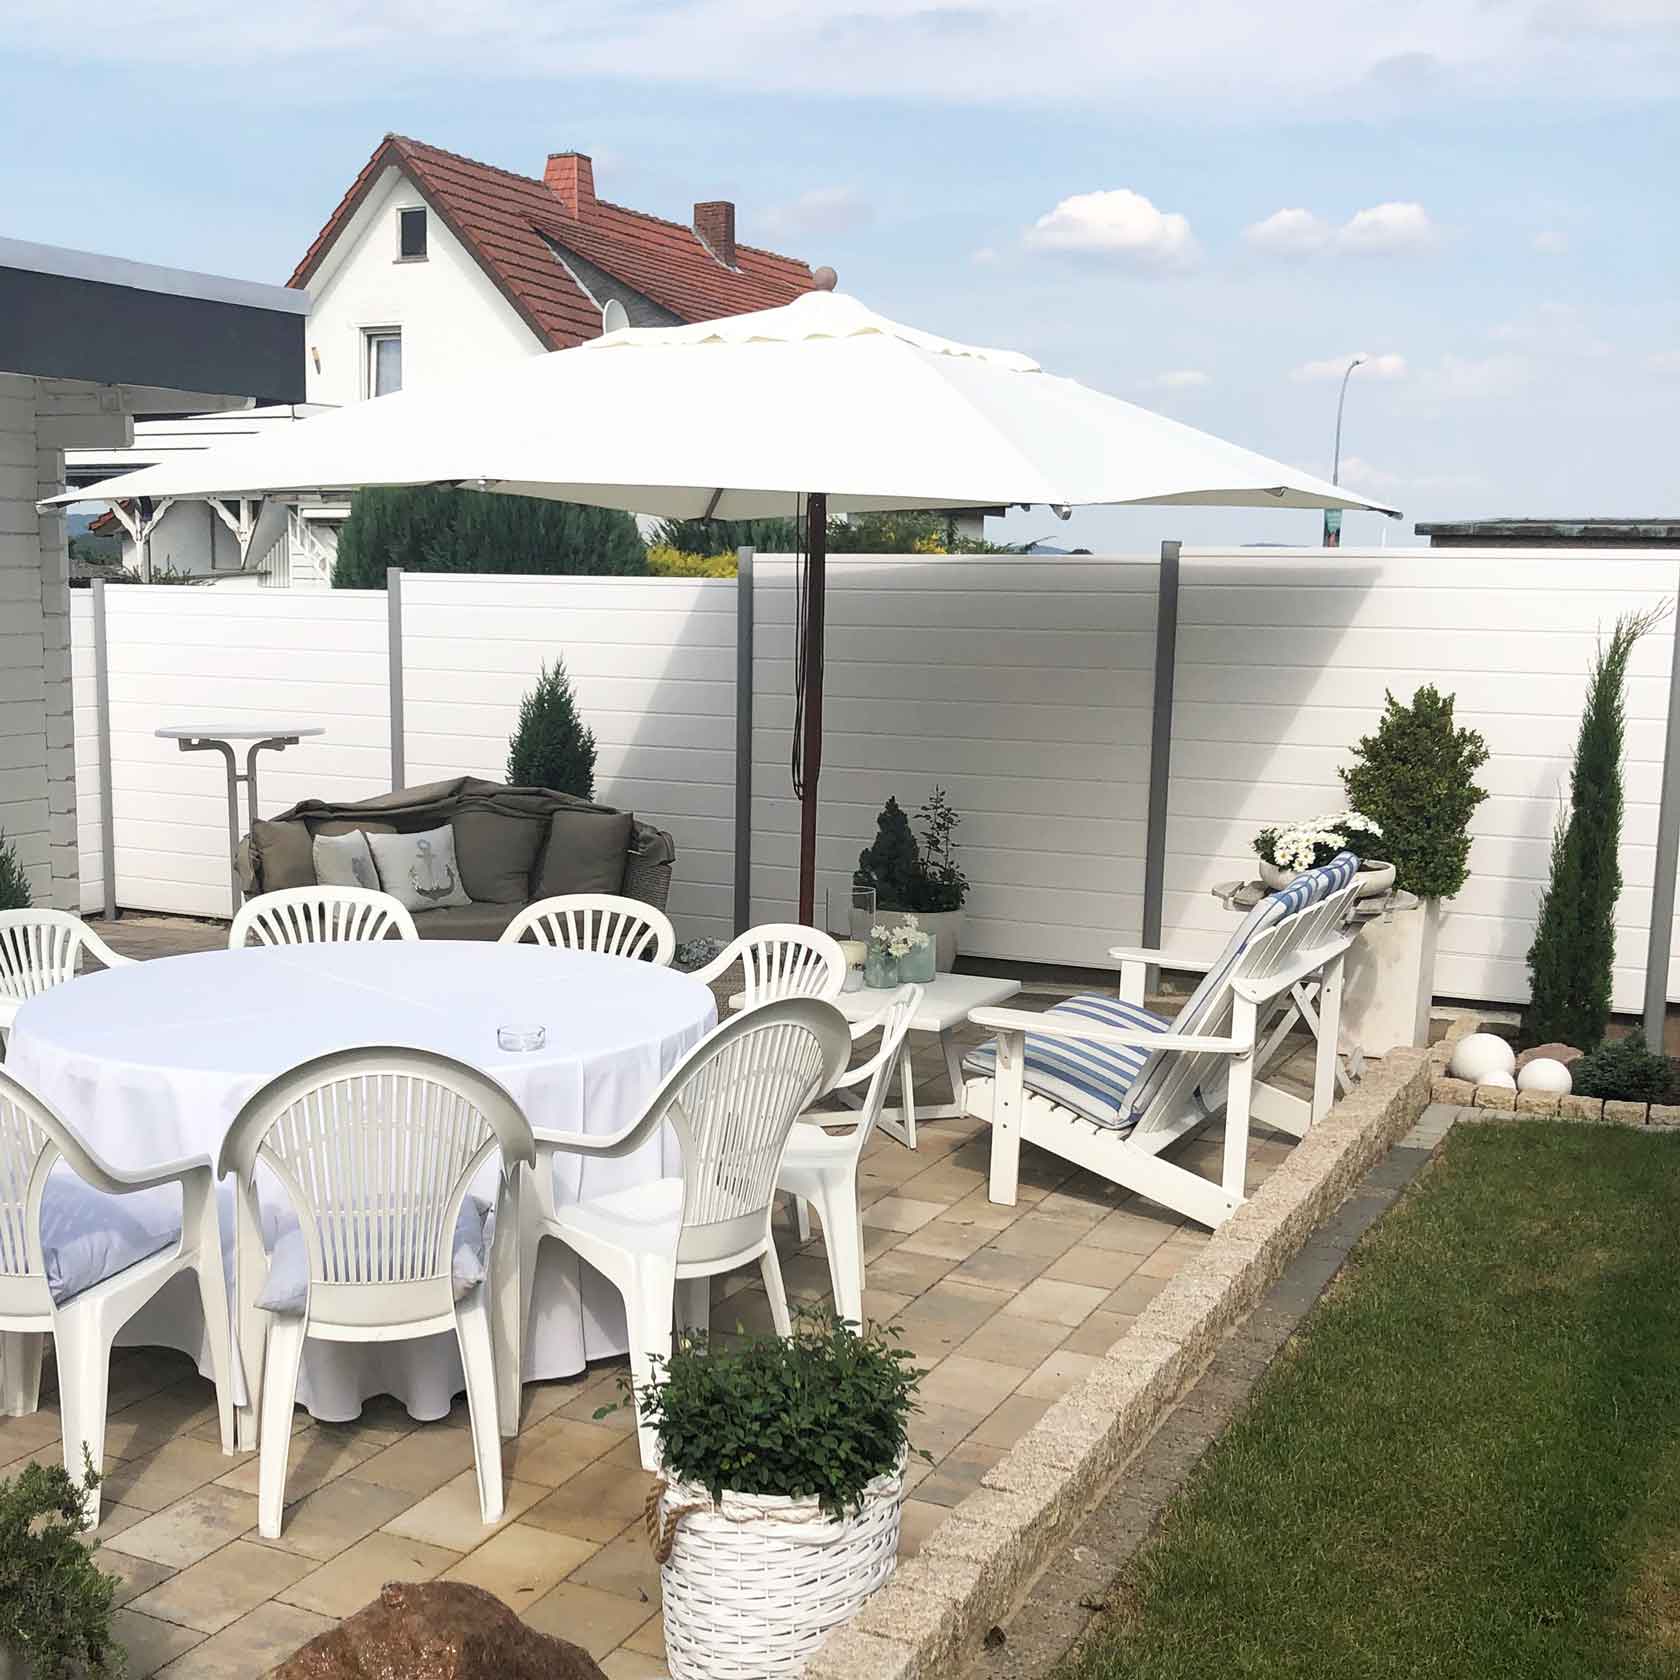 strahlende Sichtschutzwand in Weiss an einer sommerlichen Terrasse